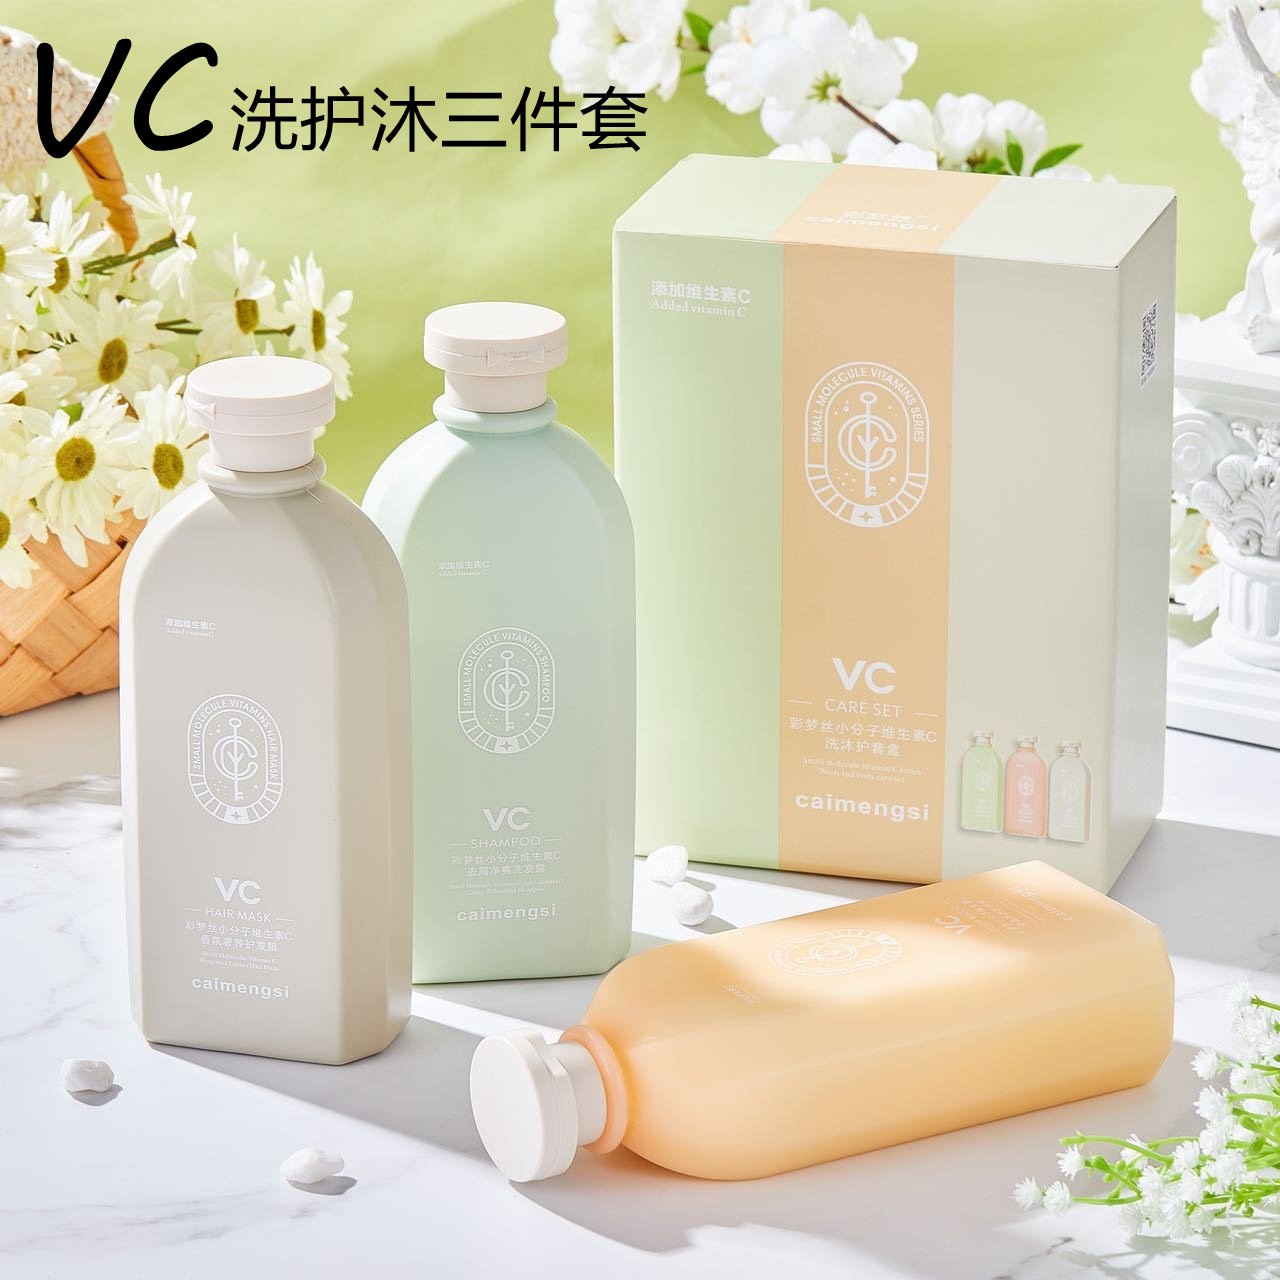 Colorful Dream Silk vitamin VC Mu care package